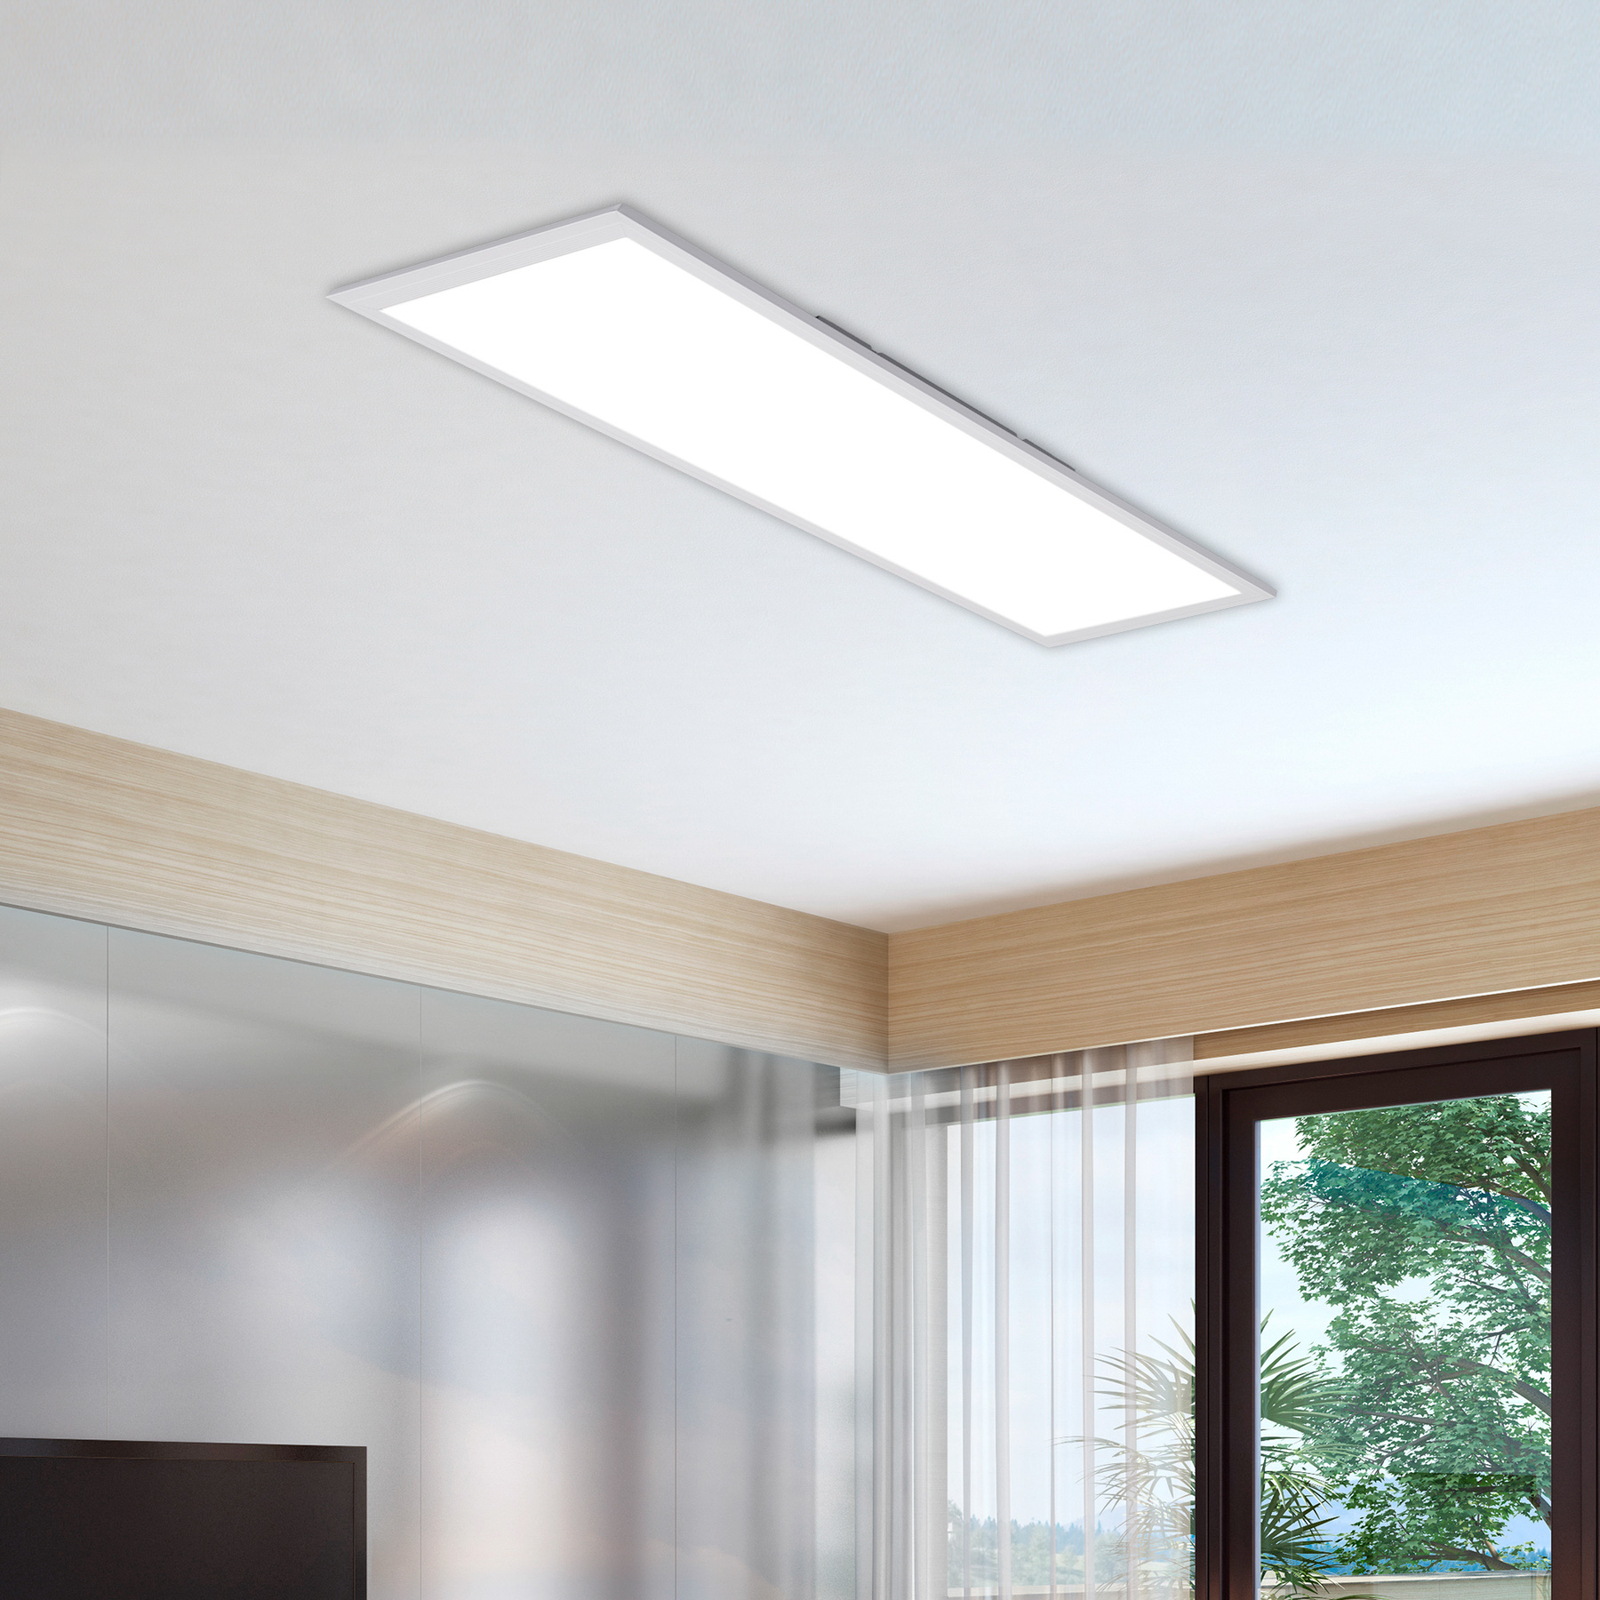 LED-paneel Simple, valge, üliplaatne, 119,5x29,5cm